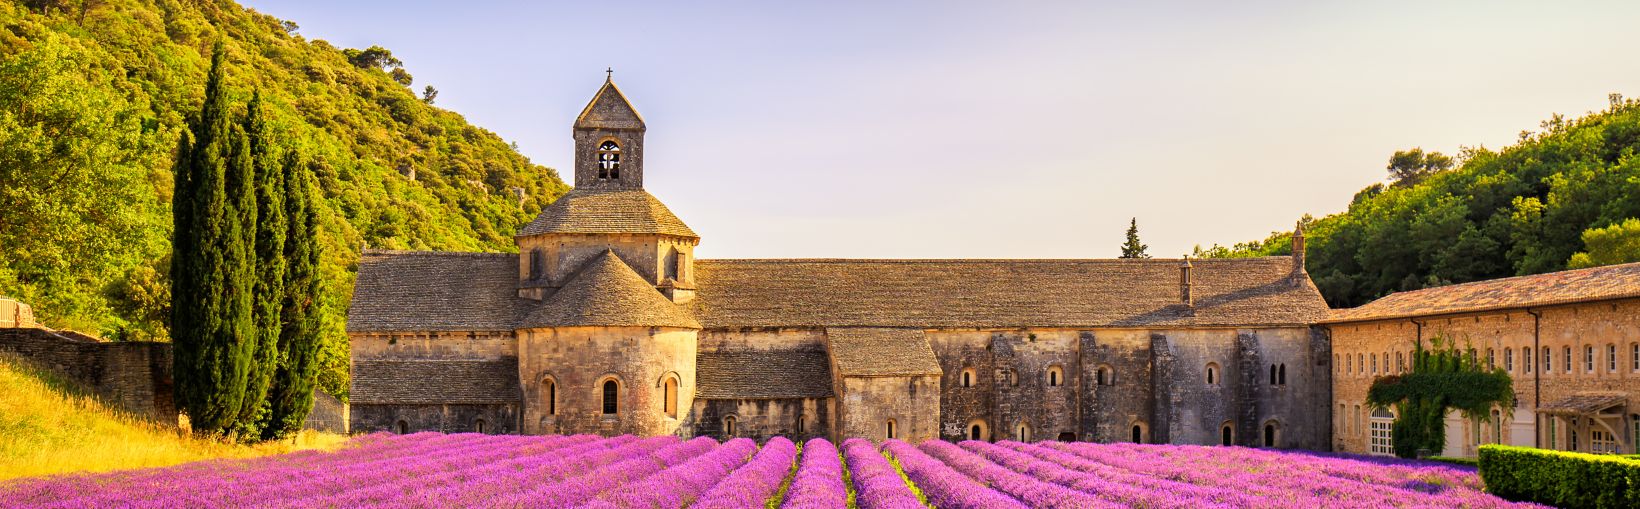 Senanquen luostari ja laventelinkukkia Provencessa, Ranskassa